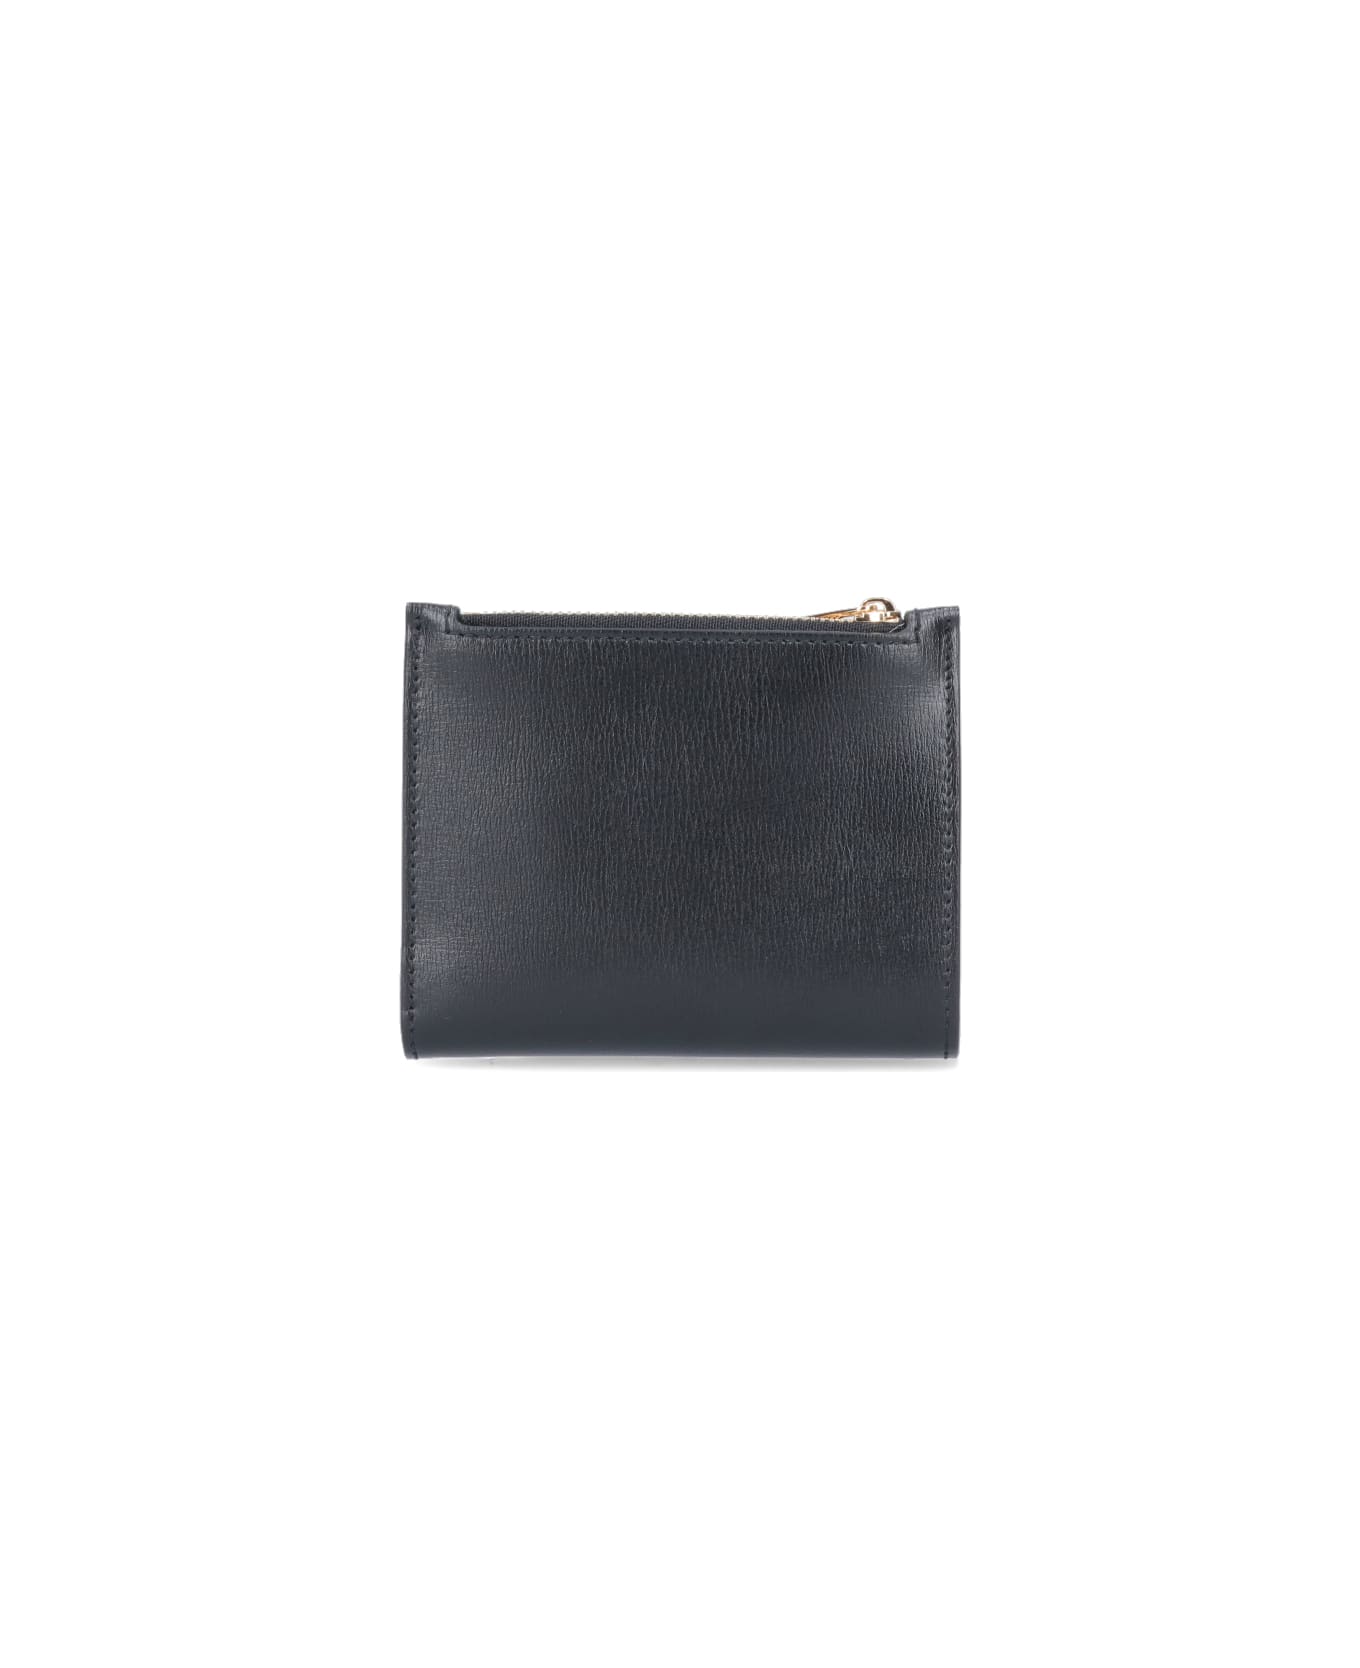 Ferragamo 'vara' Compact Wallet - Black  